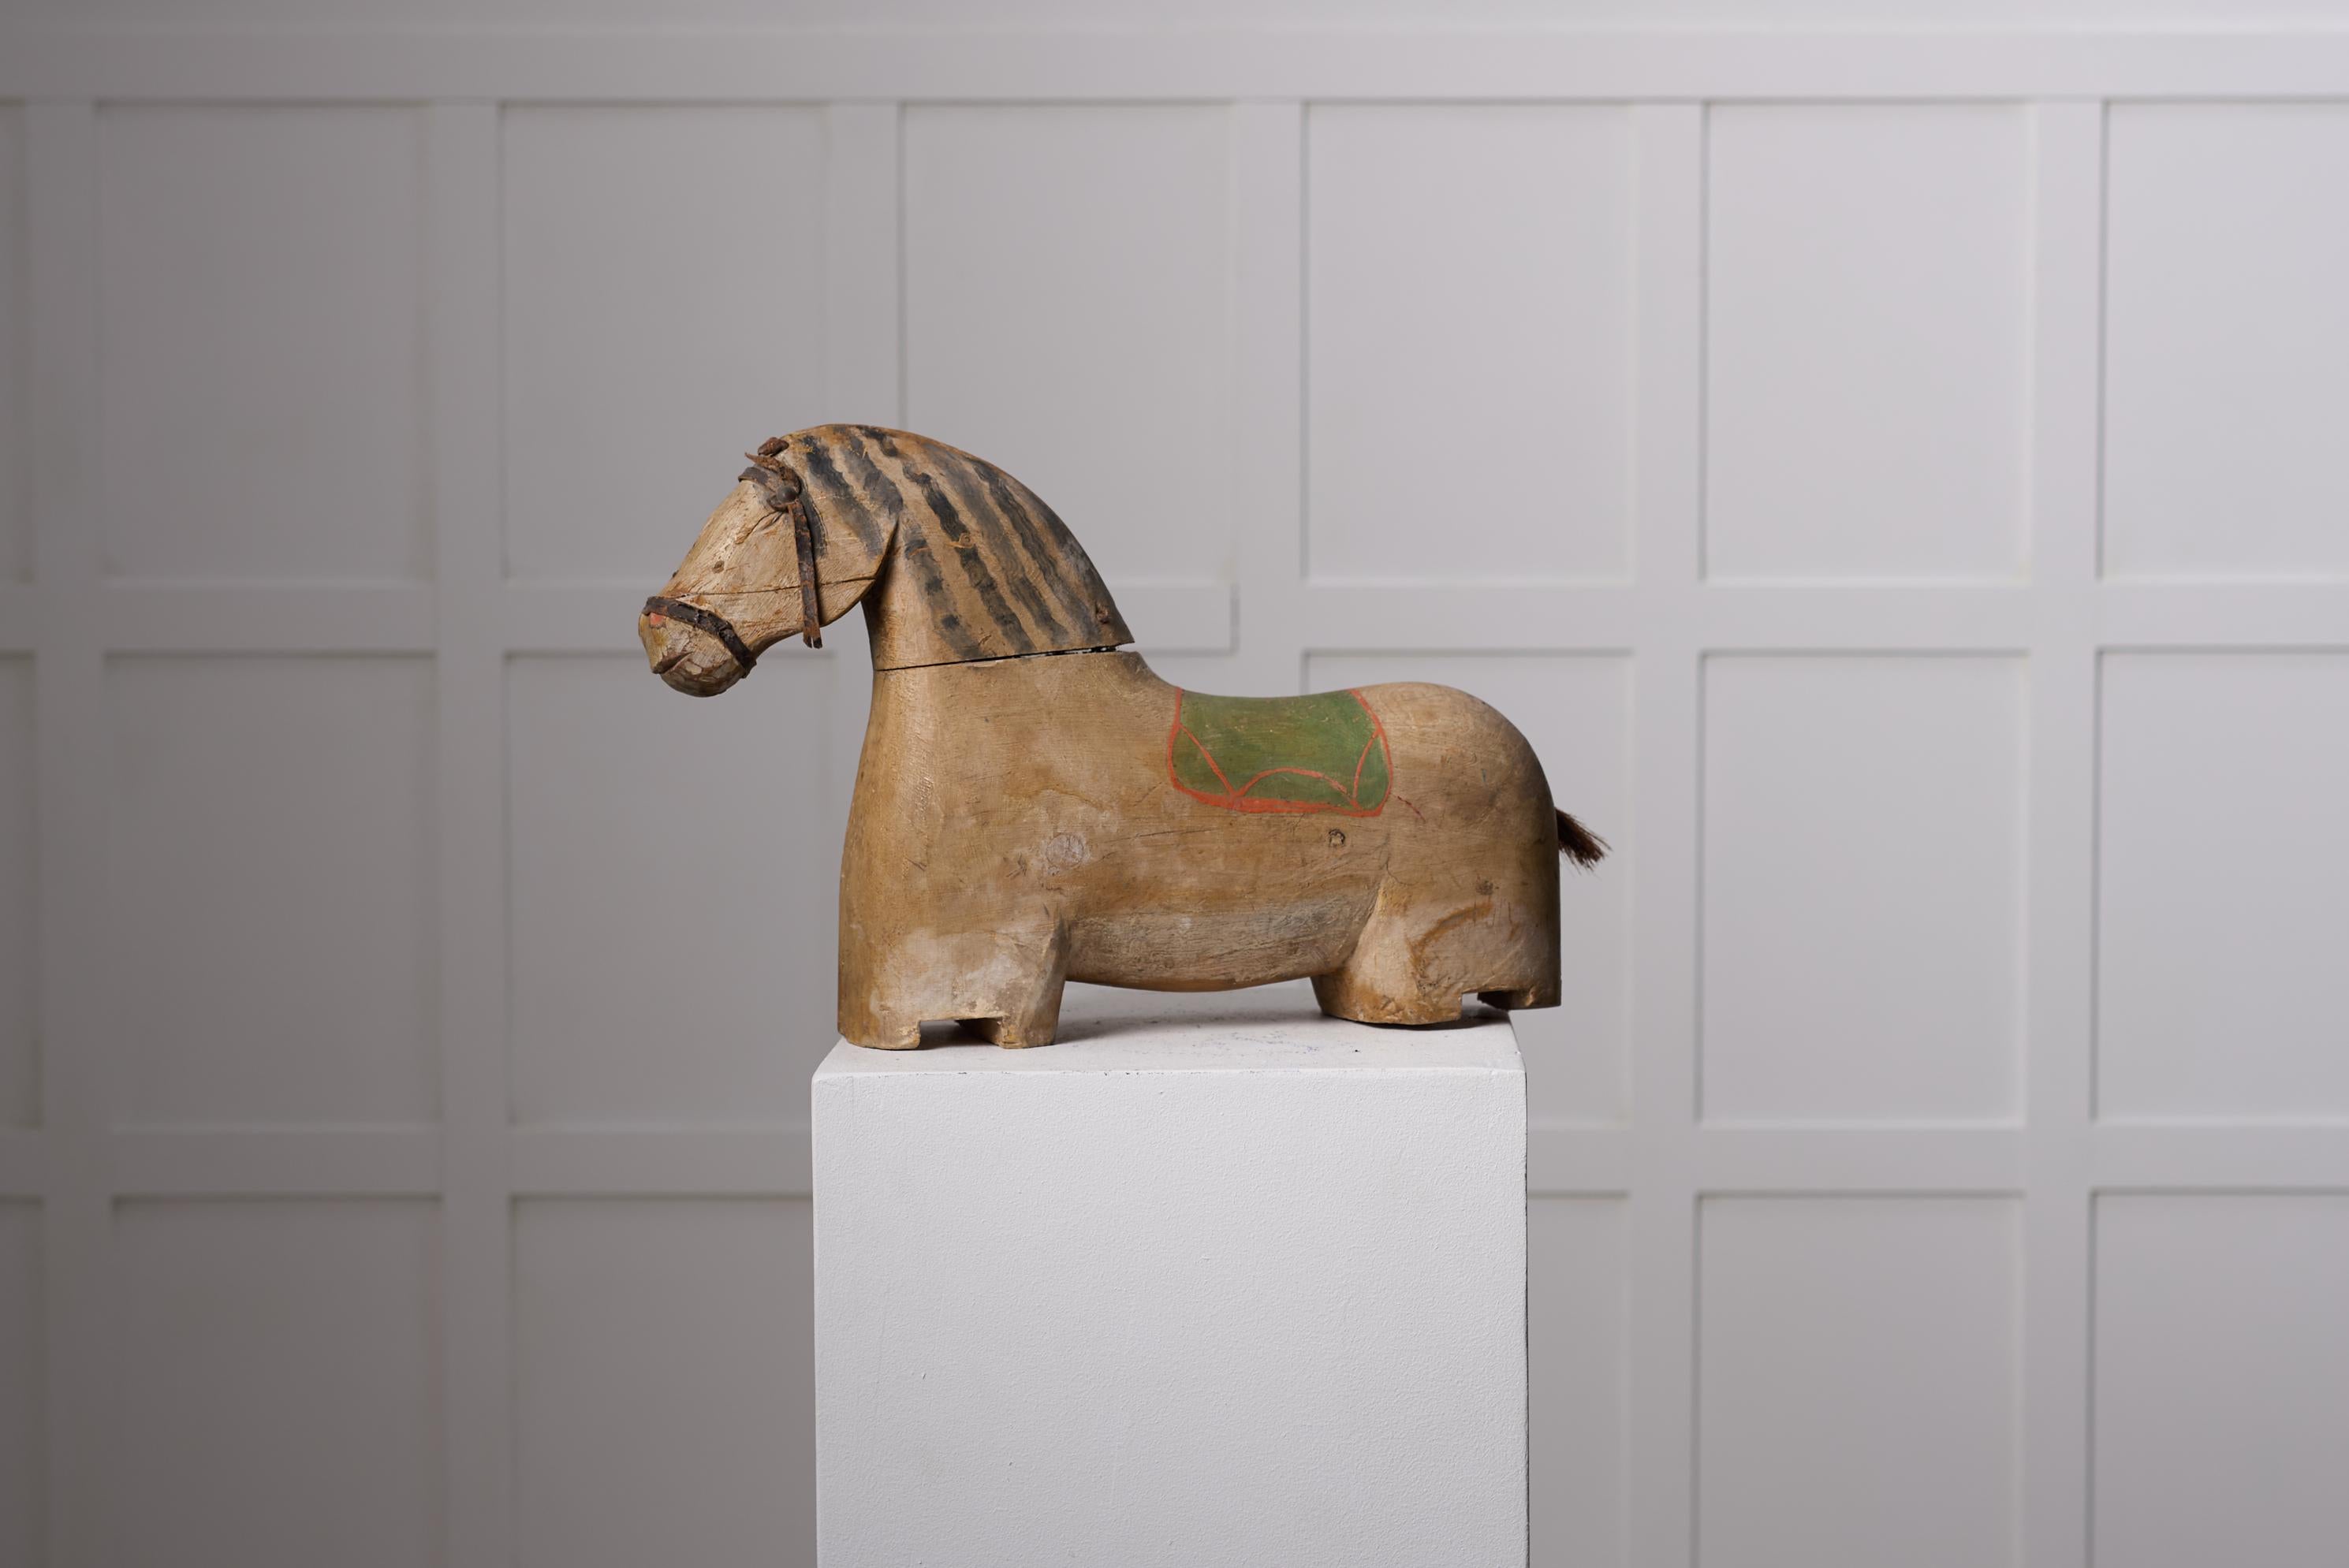 Ancienne sculpture de cheval en bois provenant du nord de la Suède. Le cheval date d'environ 1850 et a un corps en pin avec une peinture d'origine. La sculpture est réalisée à la main et constitue une pièce unique. Il est très probable qu'il ait été